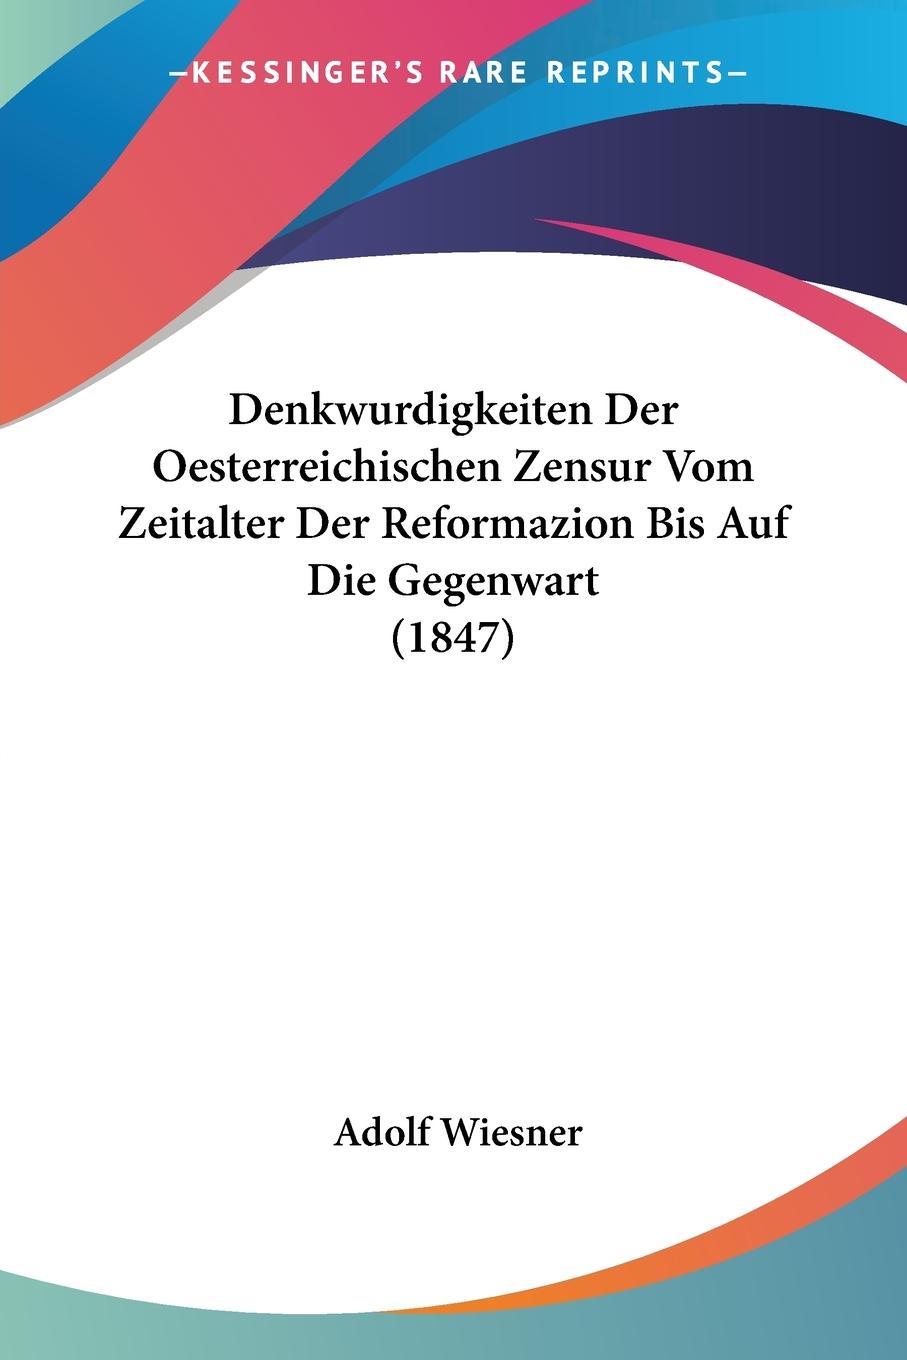 Denkwurdigkeiten Der Oesterreichischen Zensur Vom Zeitalter Der Reformazion Bis Auf Die Gegenwart (1847) - Wiesner, Adolf